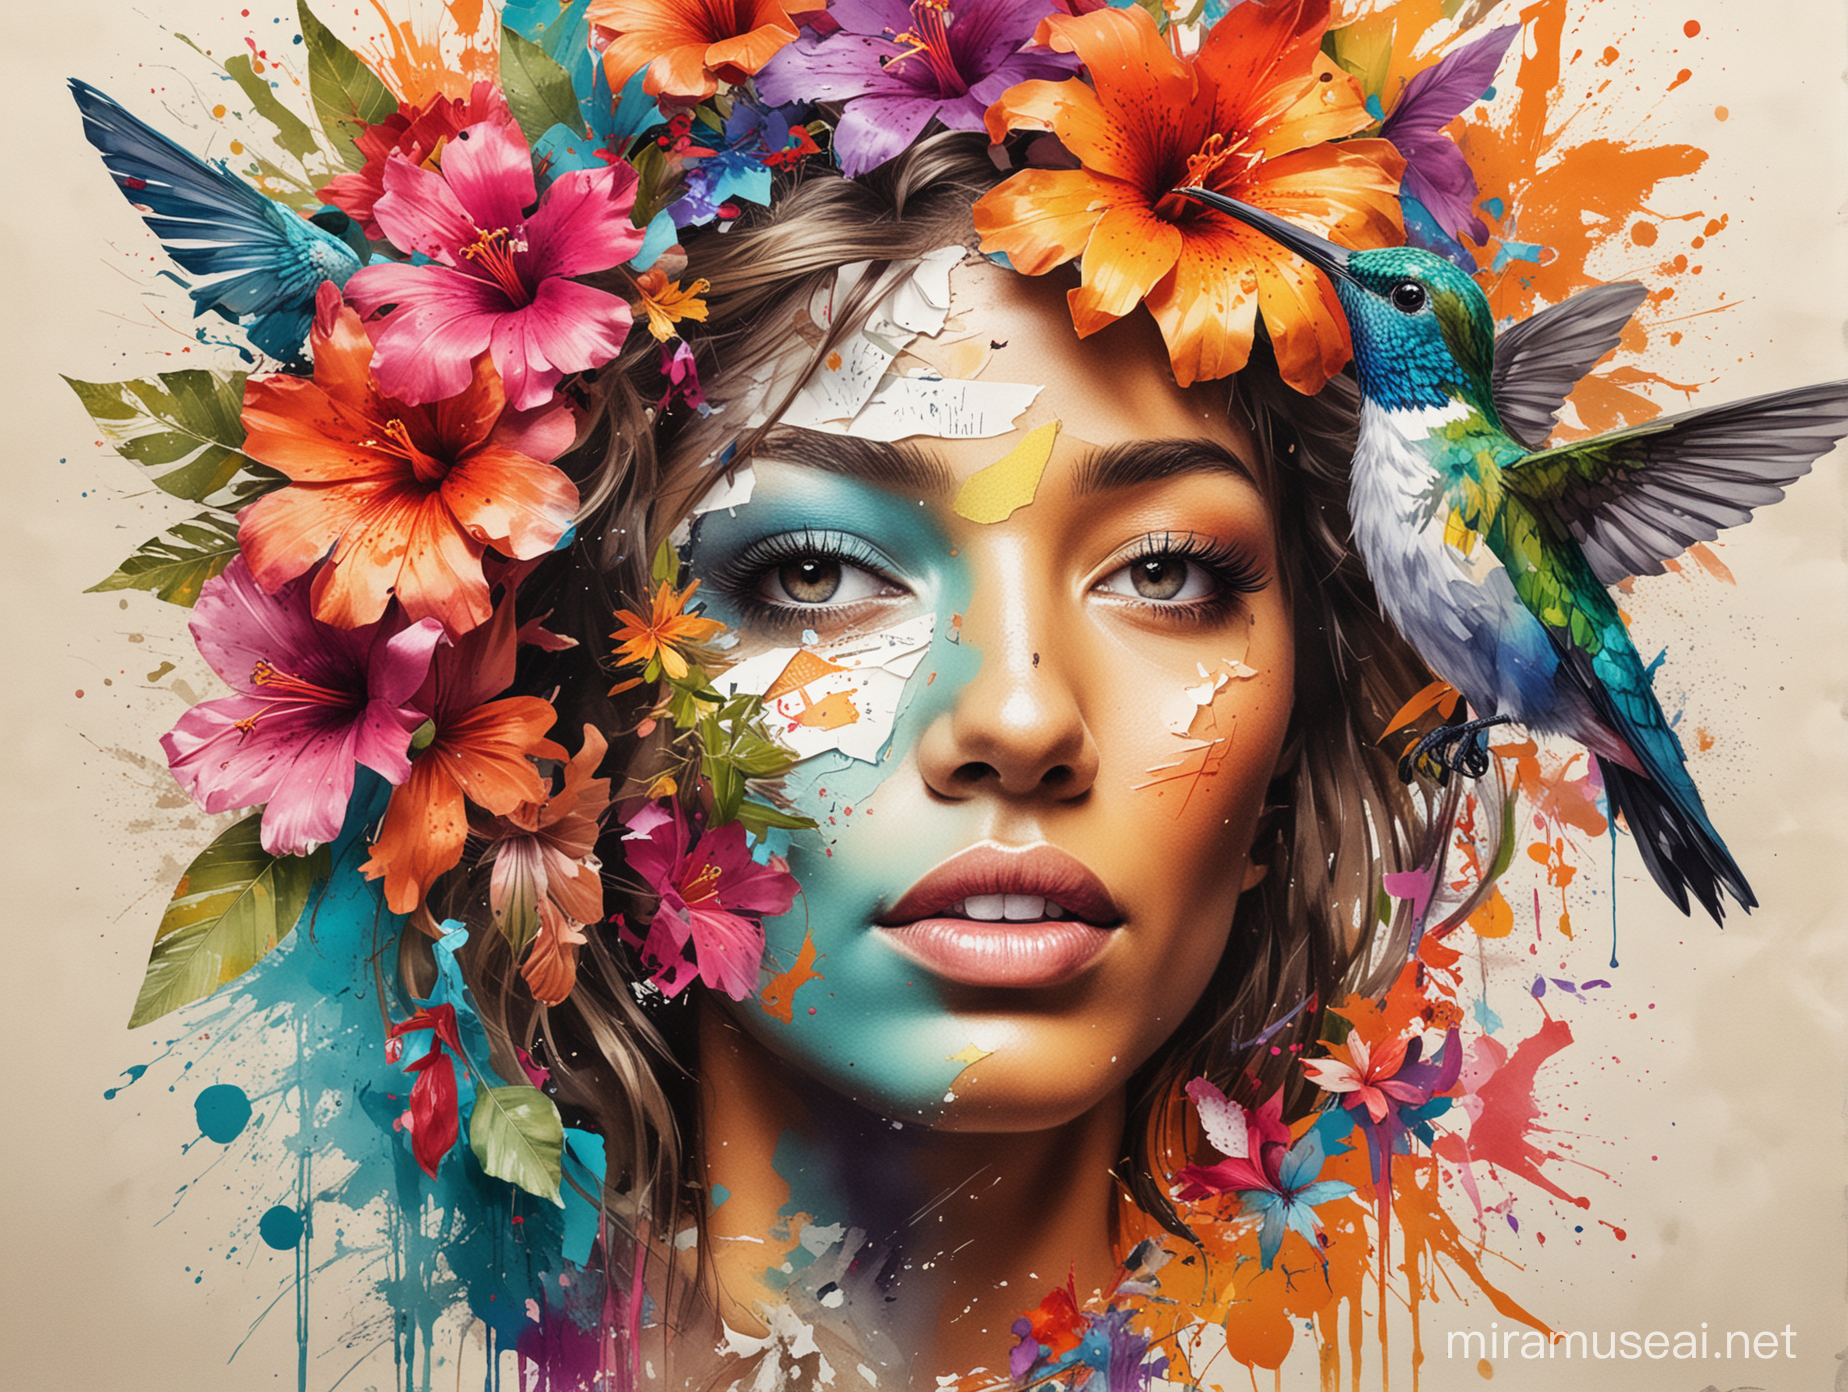 Créer un visuel mix media avec différentes techniques de création graphique pour un concours de talents au Antilles. on voit un portrait de femme avec du papier déchiré, des couleurs vives, de l'encre colorée, des fleur et un colibris.